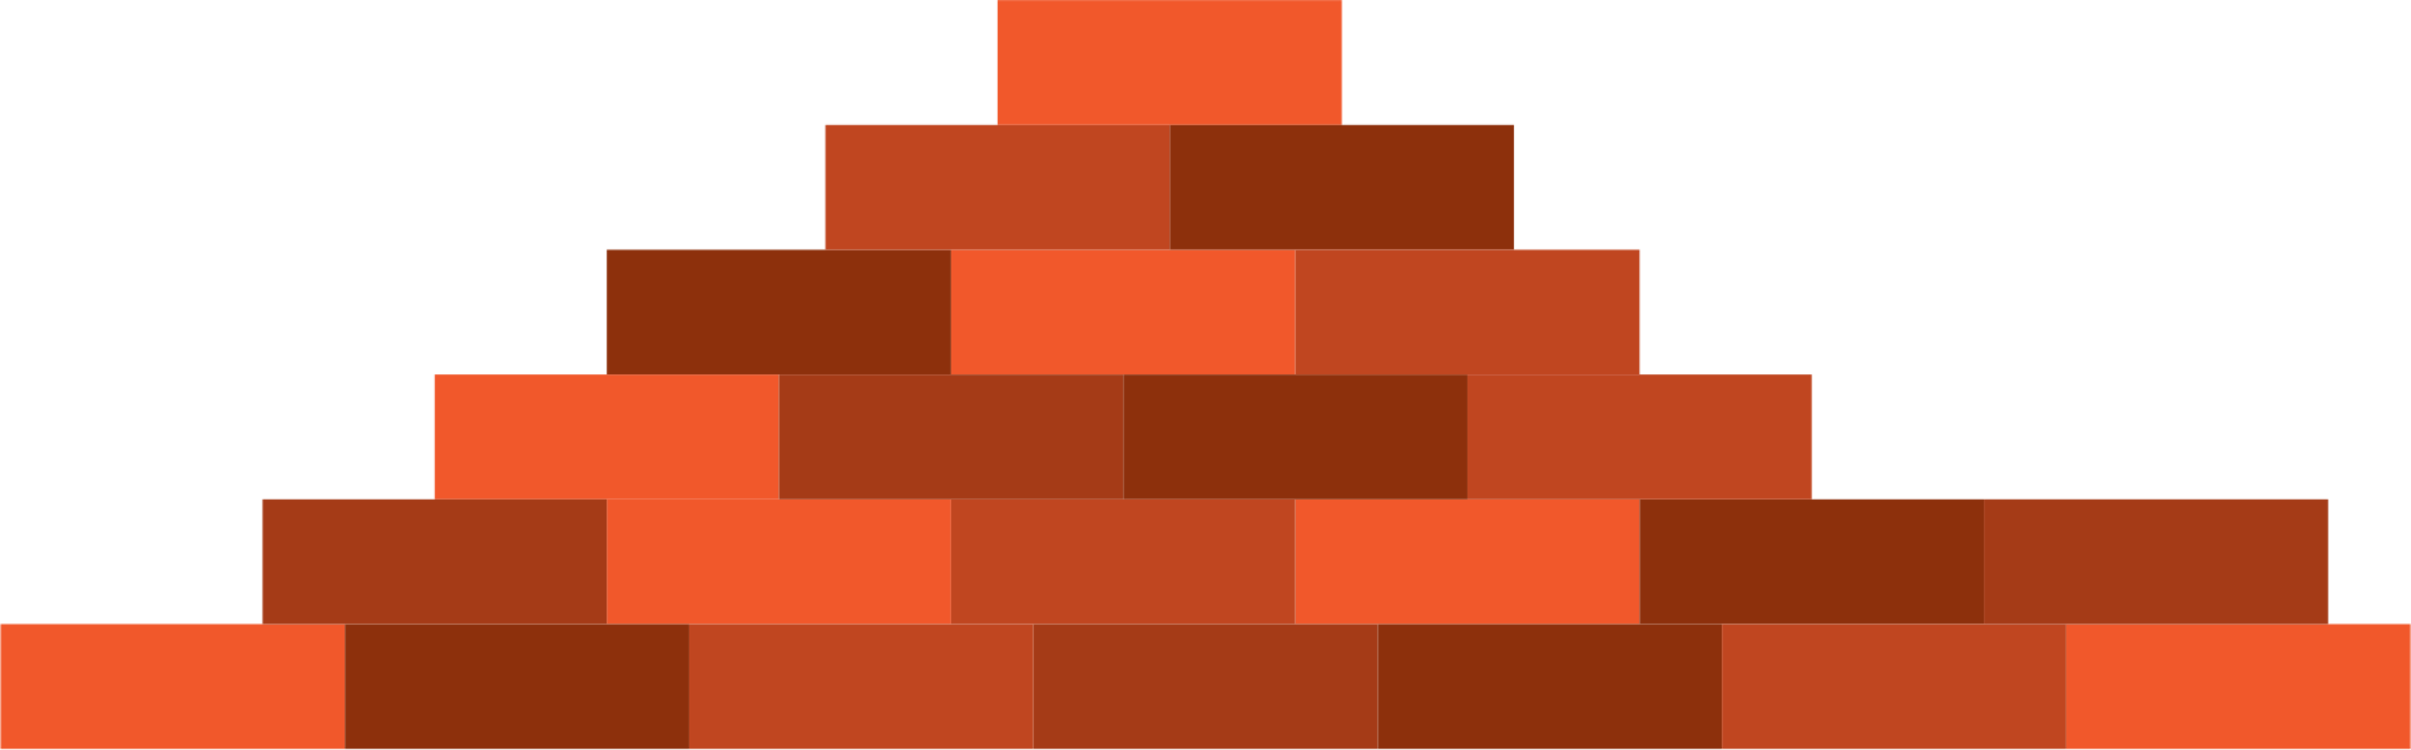 Orange,Brick,Square